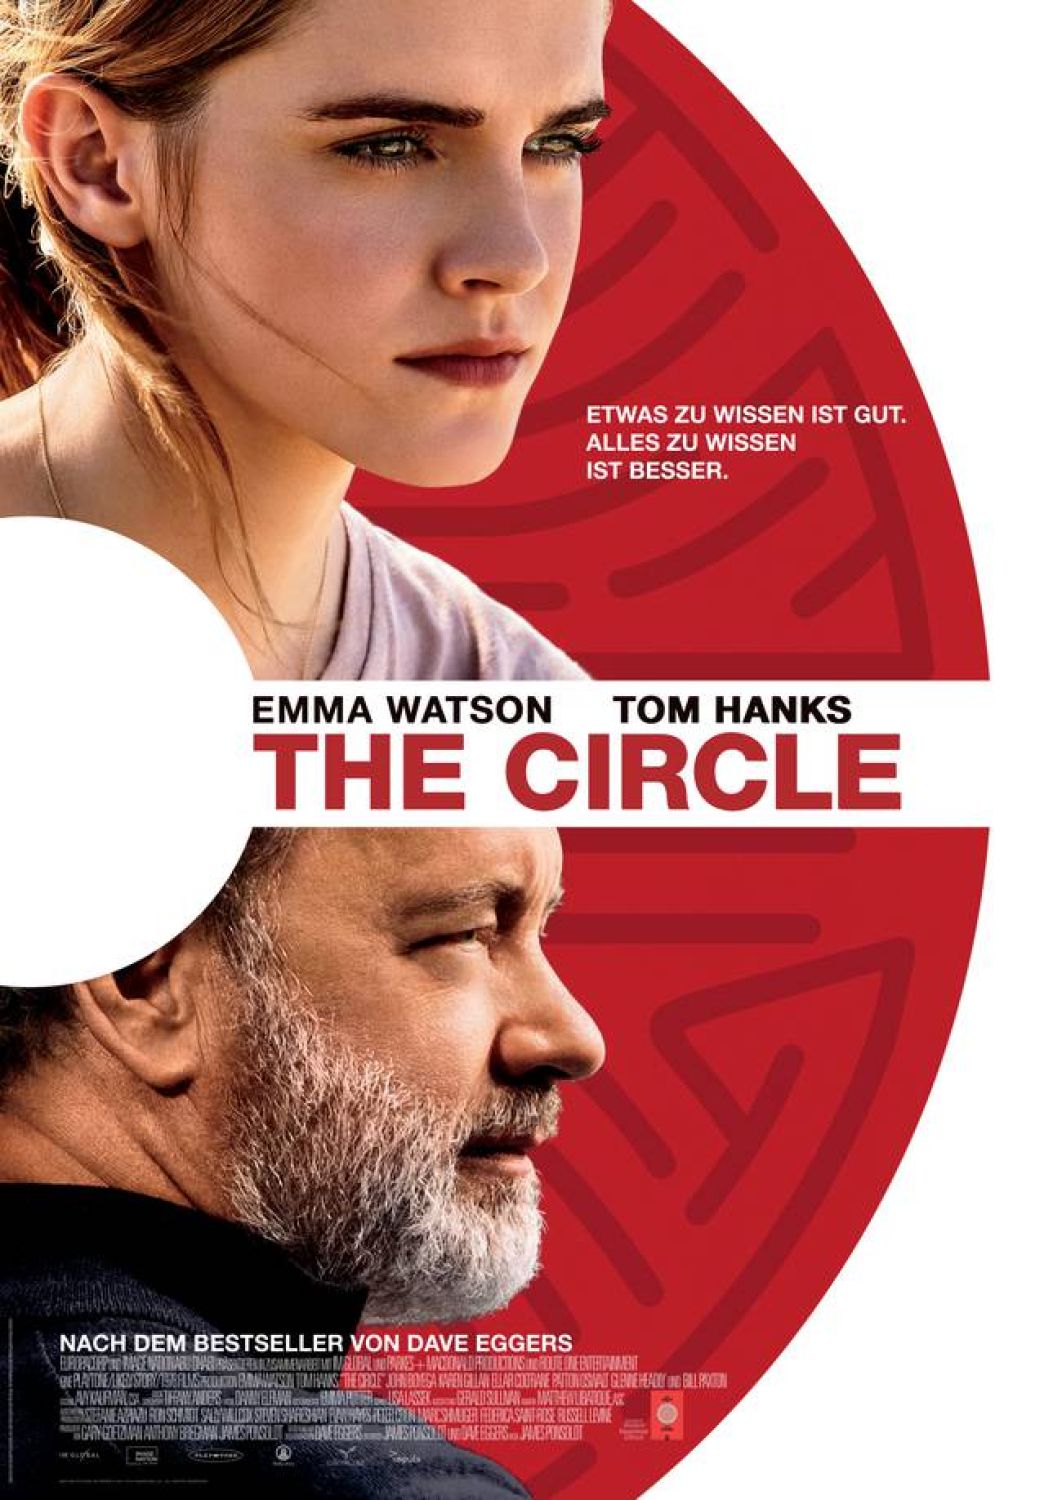 The circle